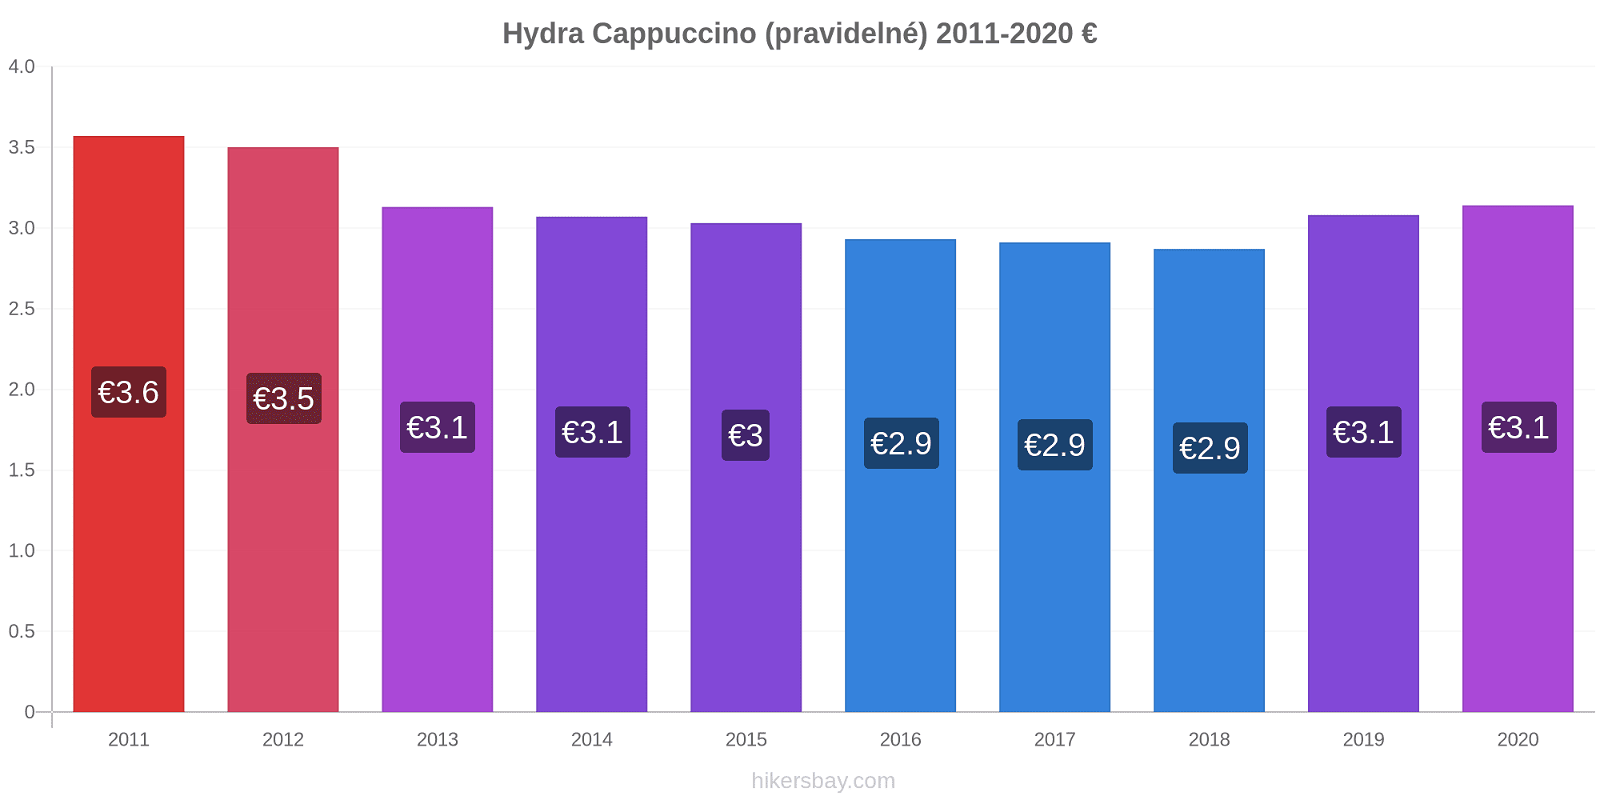 Hydra změny cen Cappuccino (pravidelné) hikersbay.com